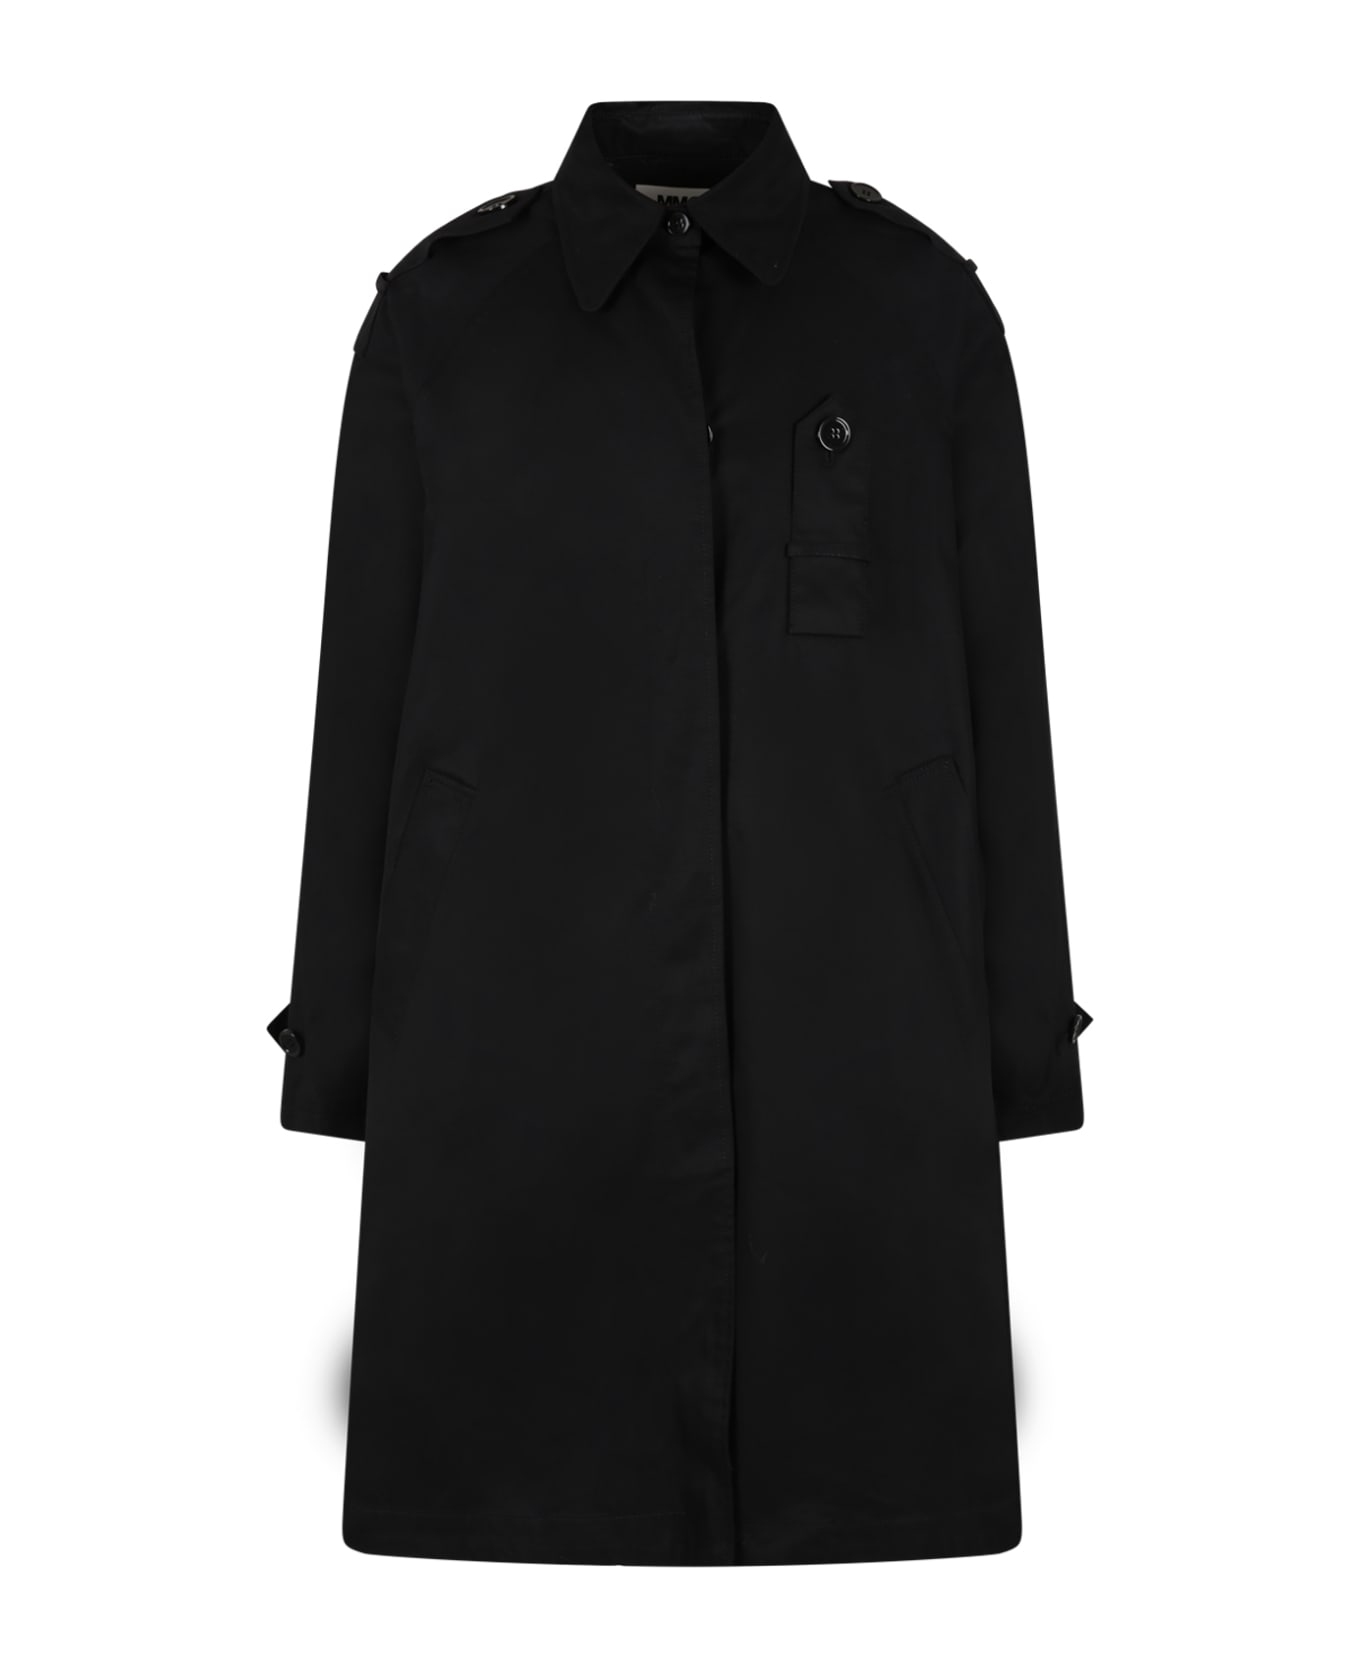 MM6 Maison Margiela Black Coat For Girl - Black